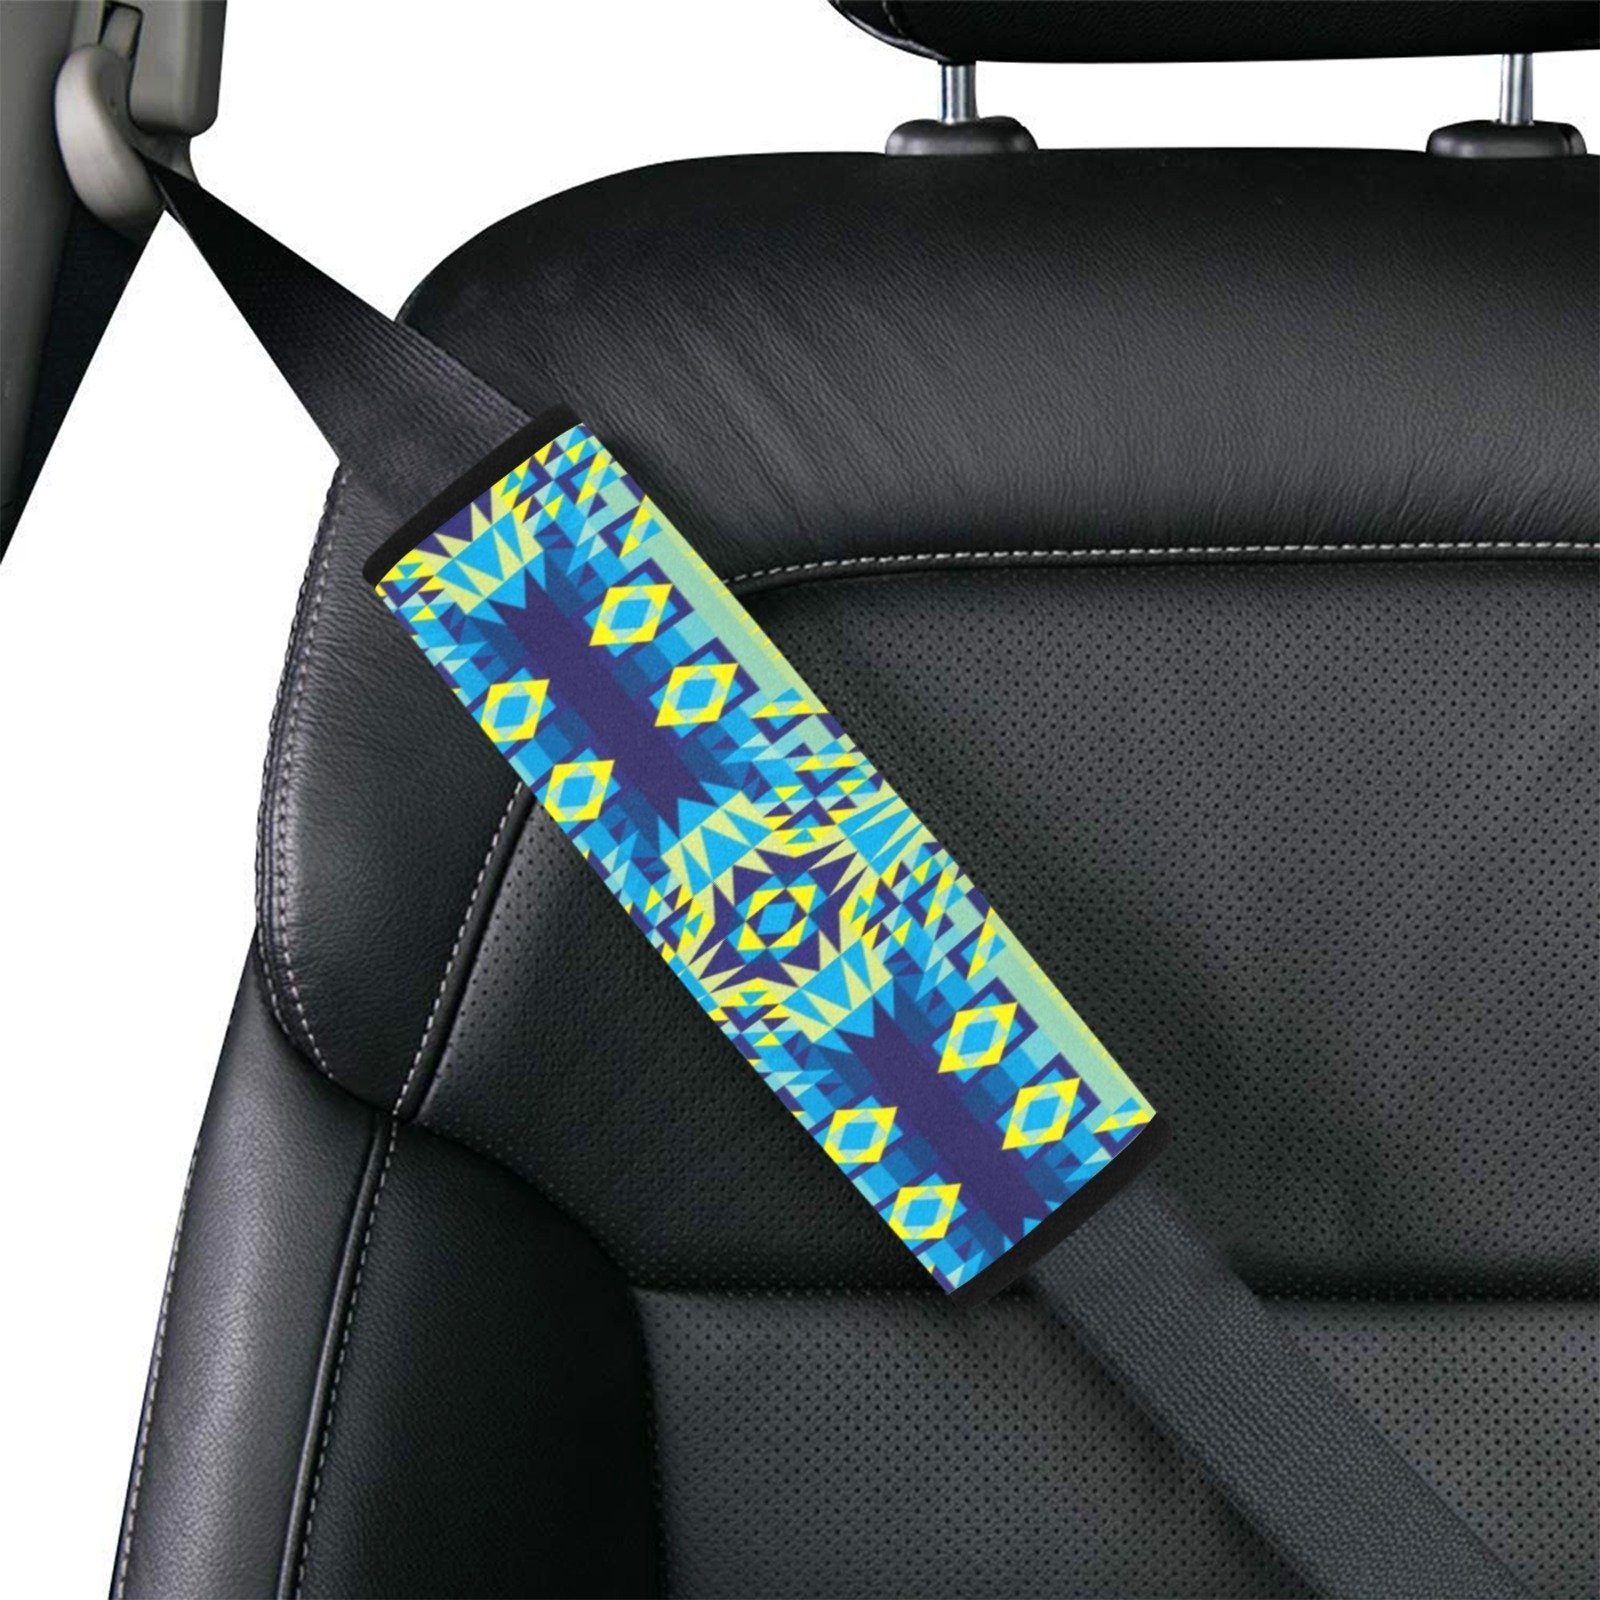 Kaleidoscope Jaune Bleu Car Seat Belt Cover 7''x12.6'' (Pack of 2) Car Seat Belt Cover 7x12.6 (Pack of 2) e-joyer 